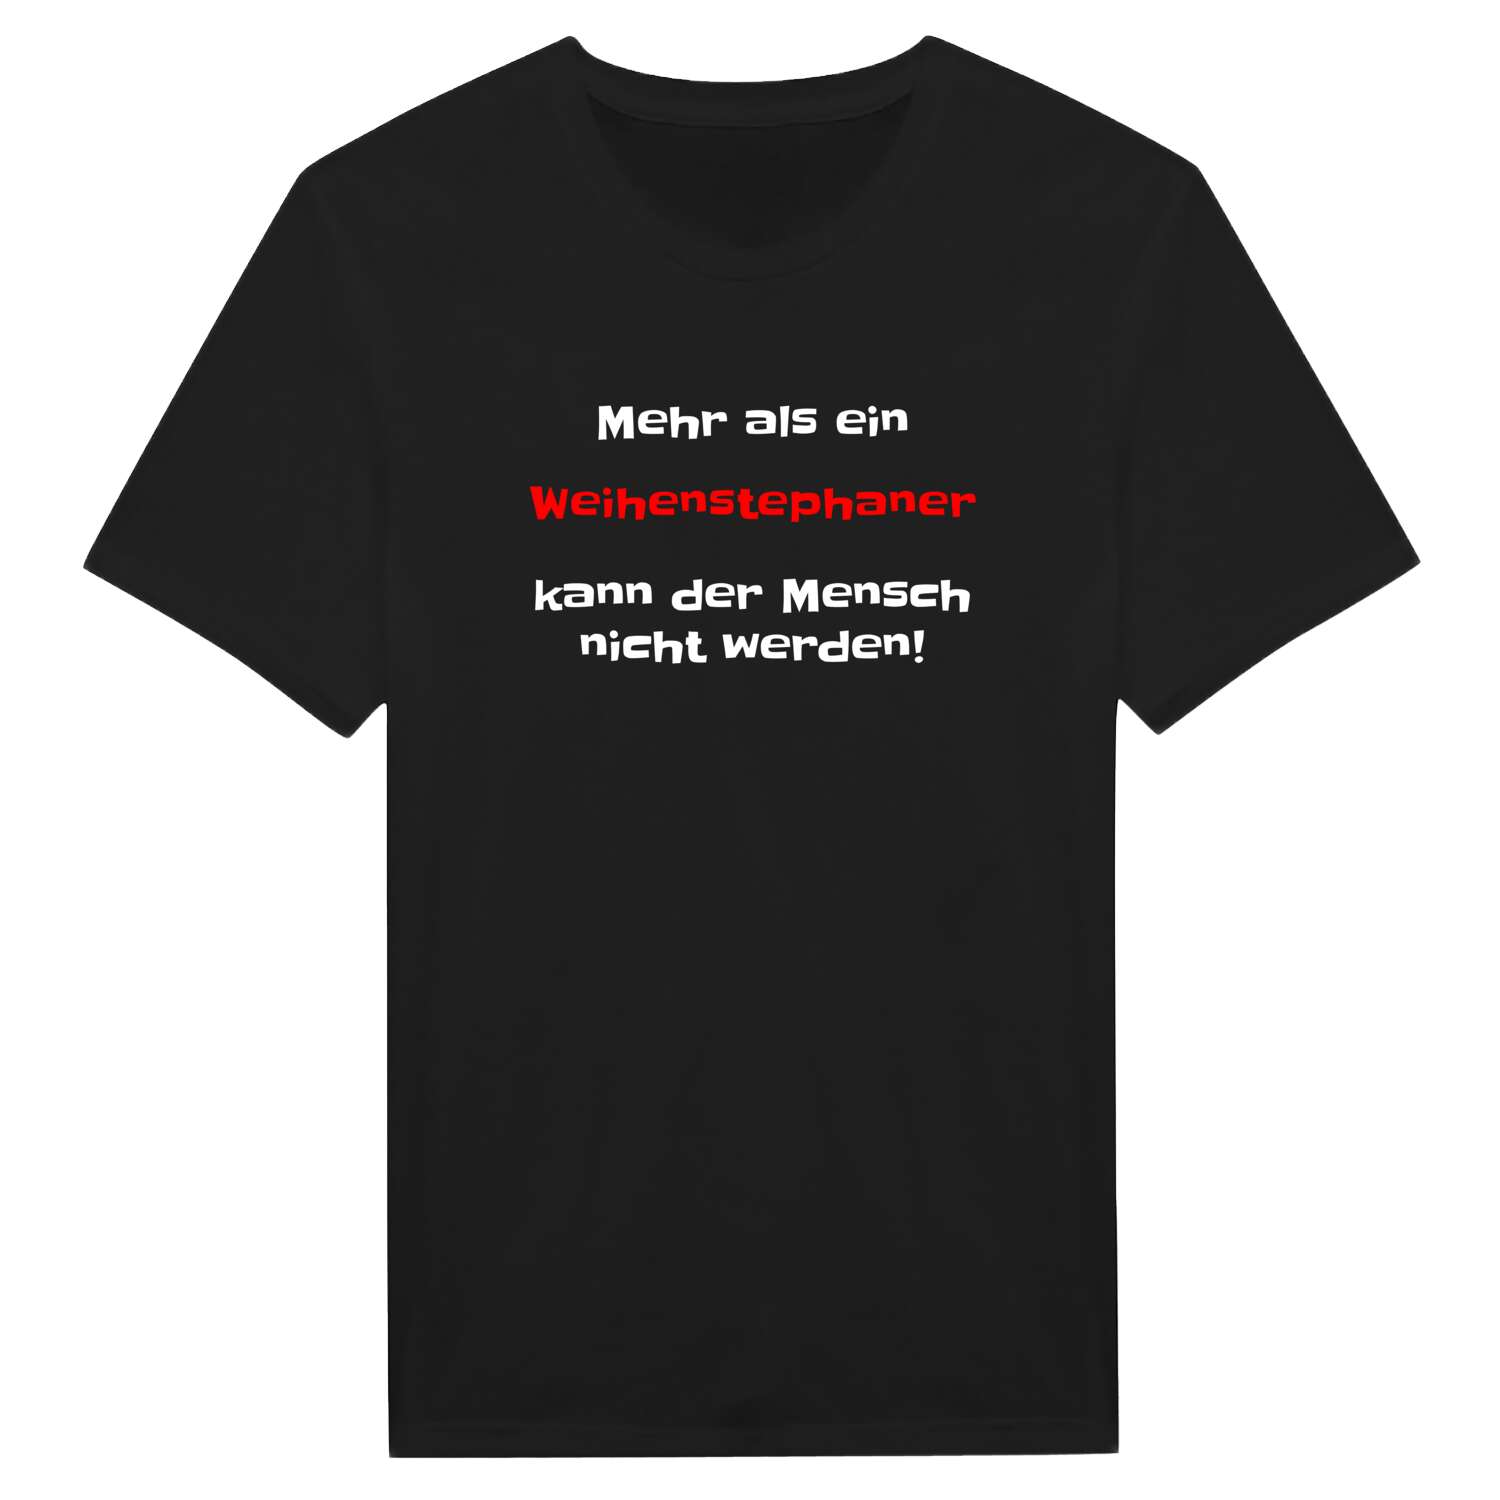 Weihenstephan T-Shirt »Mehr als ein«